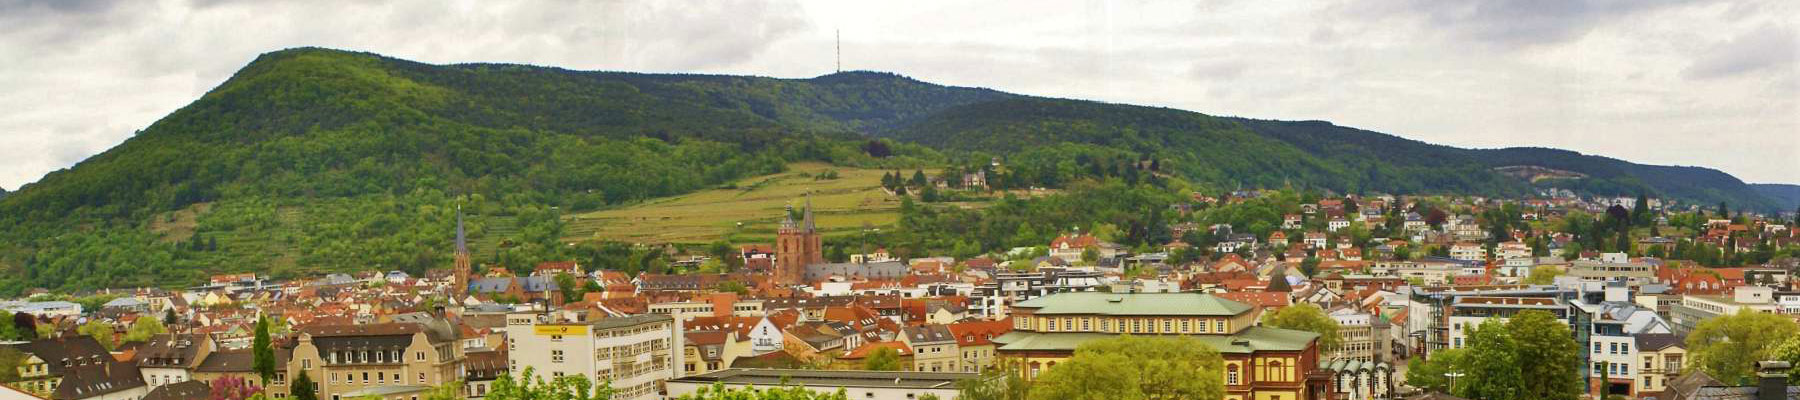 Ferienwohnungen - Sehnke Neustadt an der Weinstrasse - Location and surroundings